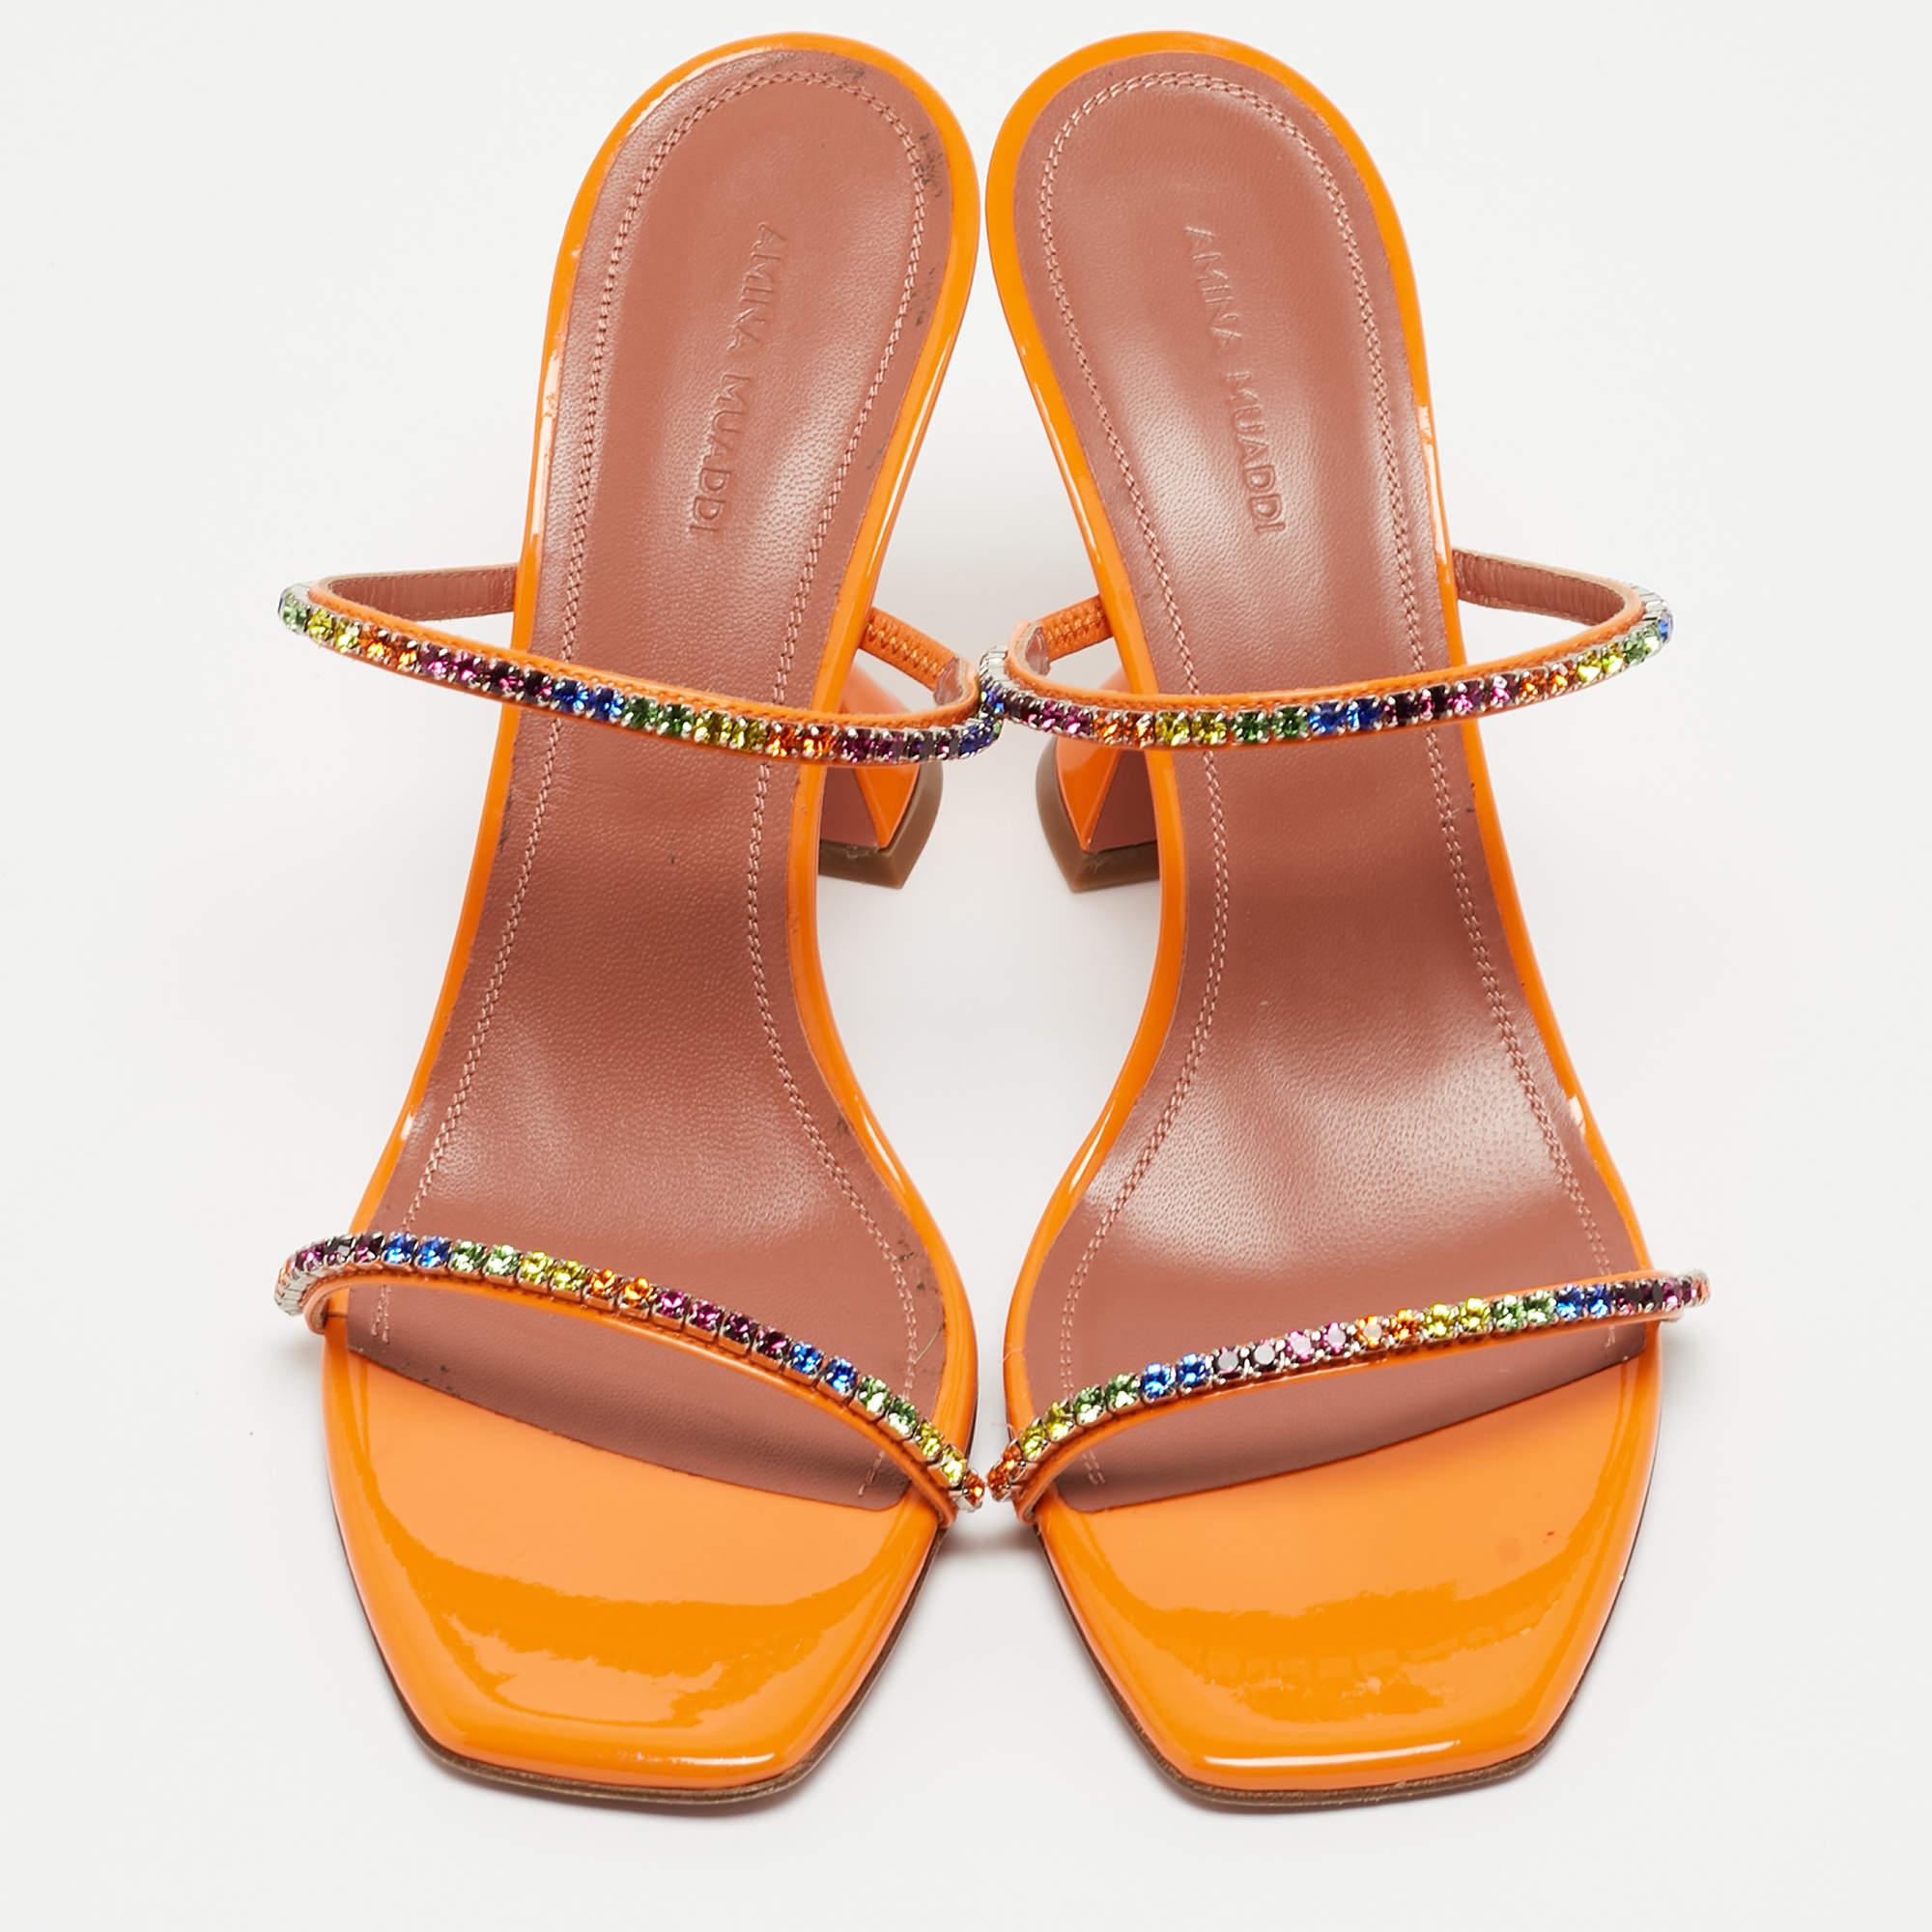 Entrez dans le monde du luxe et du confort avec ces sandales Amina Muaddi. Dotées de deux brides embellies et de talons emblématiques, ces diapositives apporteront une touche glamour à l'ensemble.

Comprend : Sac à poussière d'origine, boîte